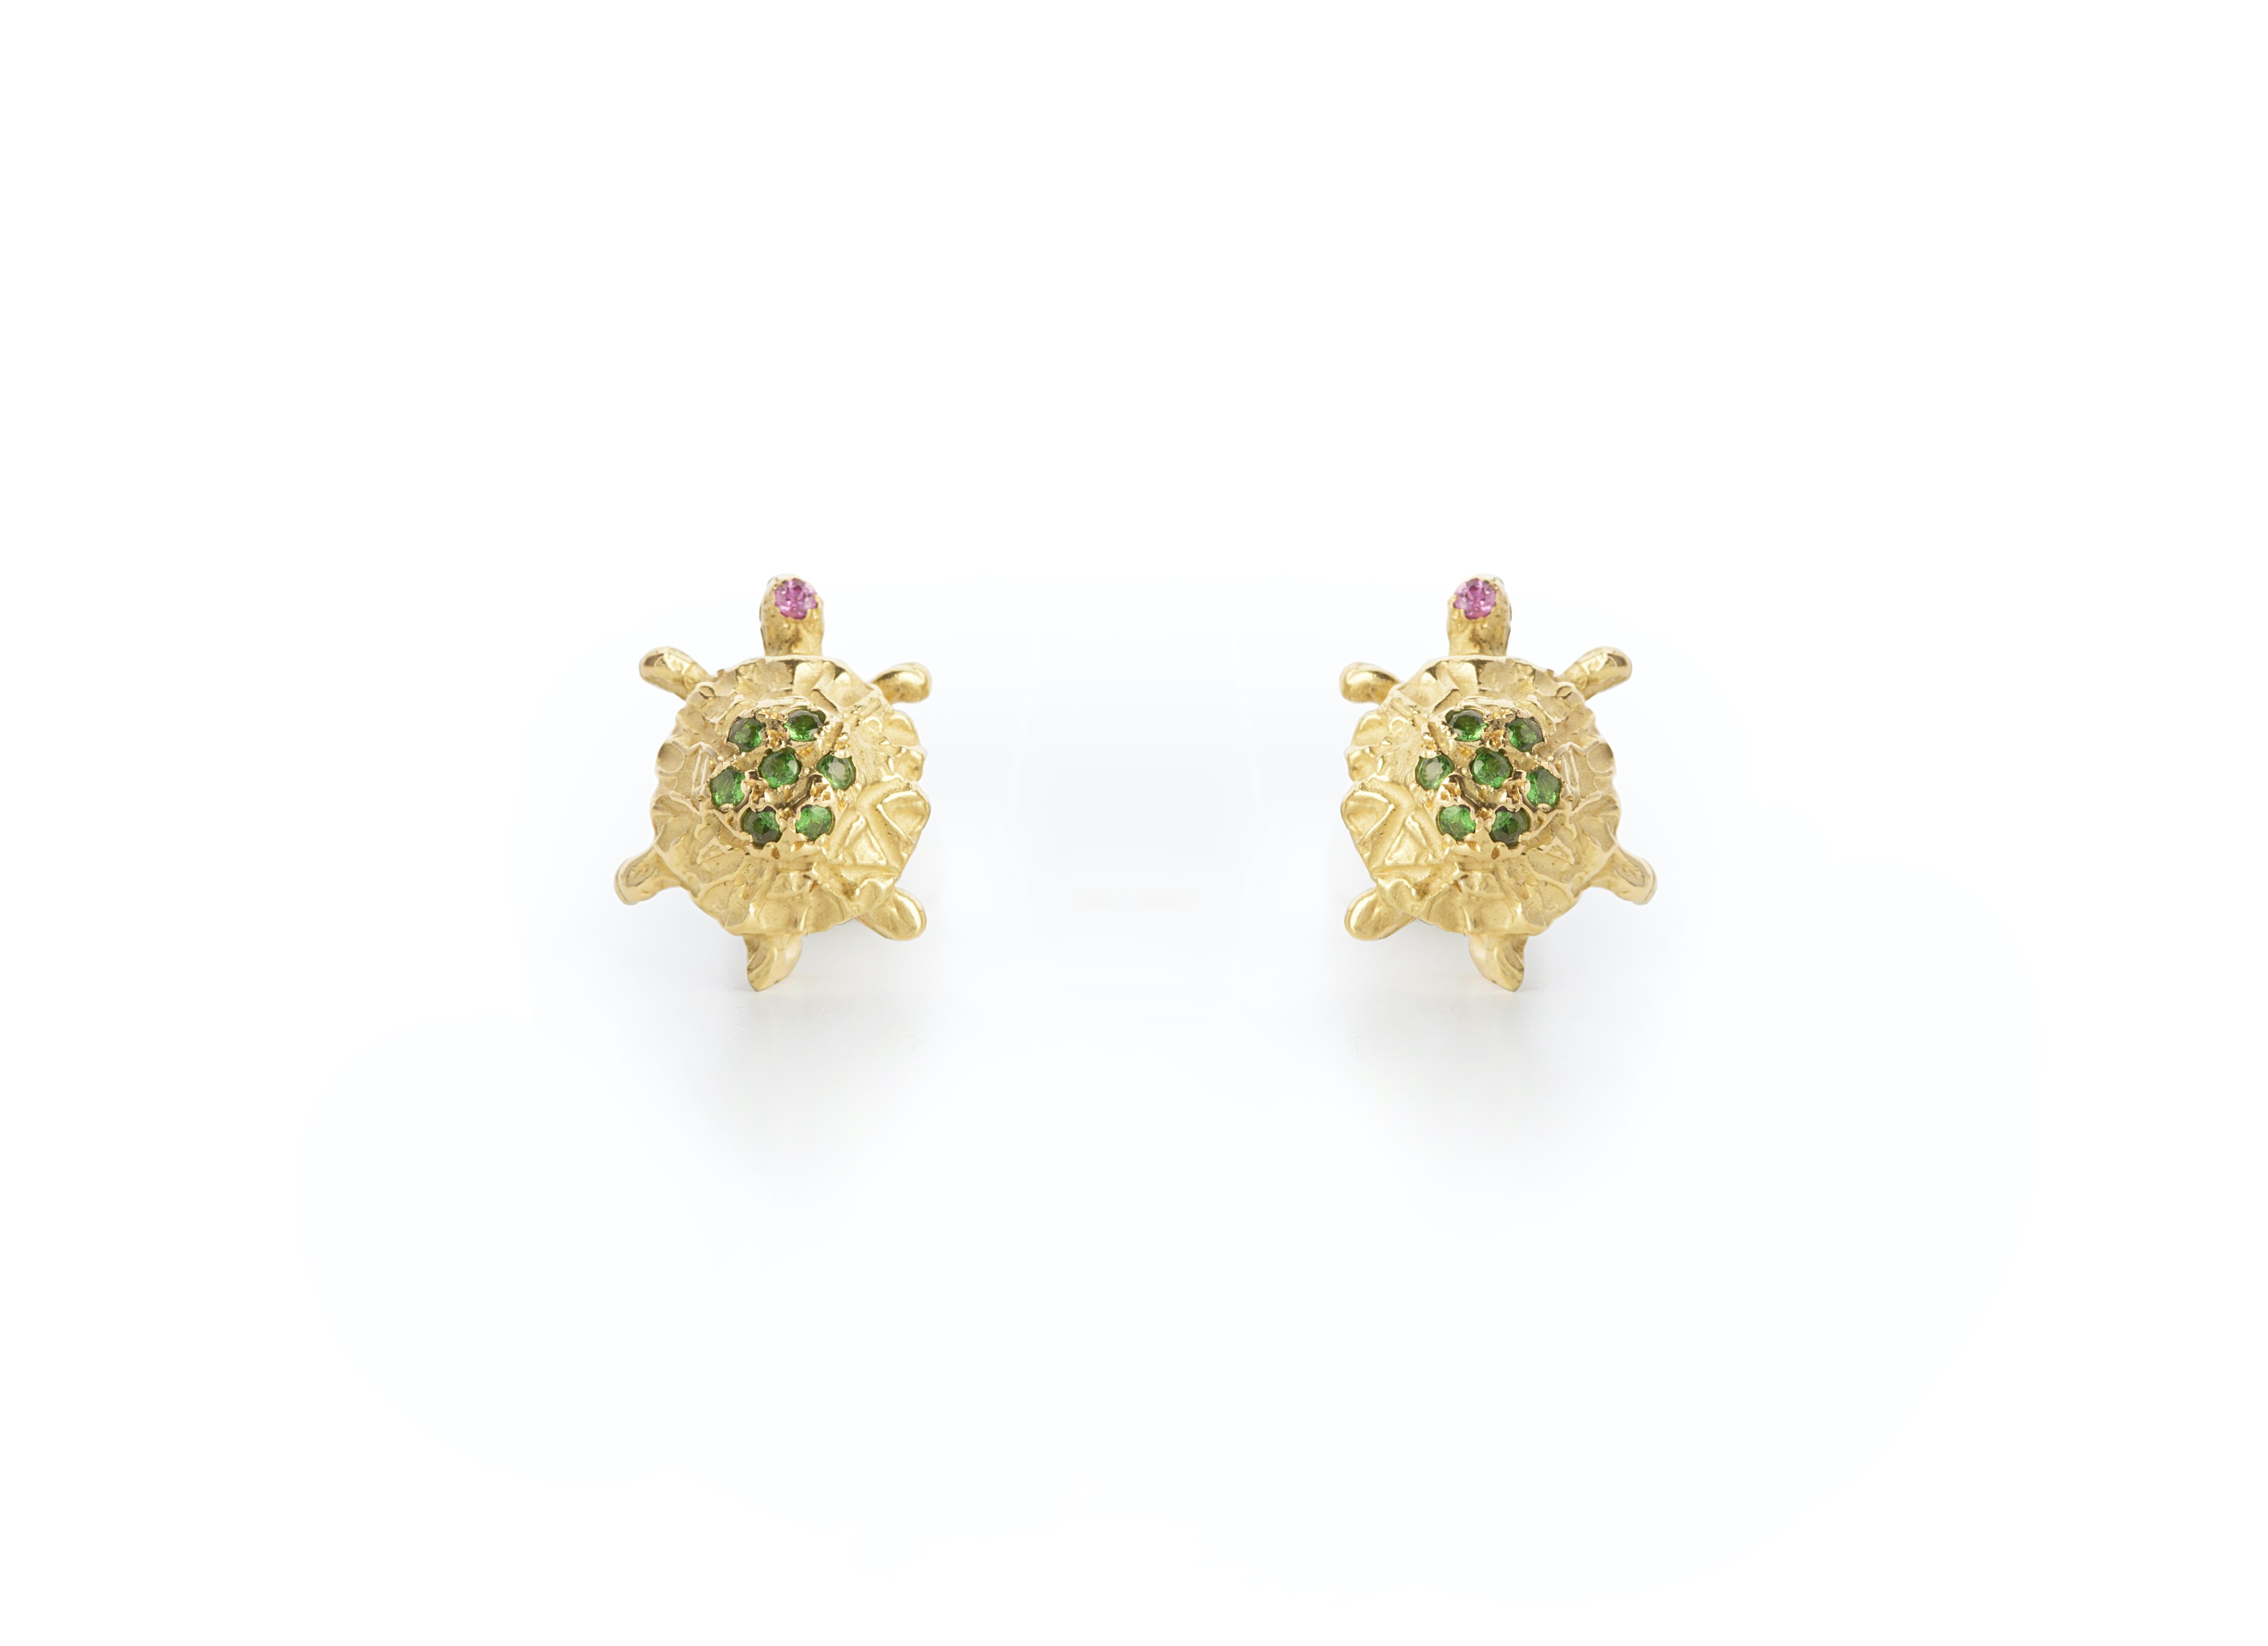 Une paire de clous d'oreilles Little Turtles en or jaune 18 carats, fabriqués à la main et ornés d'une belle pierre tsavorite d'un vert profond et d'yeux en tourmaline rose.
Ces boucles d'oreilles sont personnalisables avec différentes pierres sur